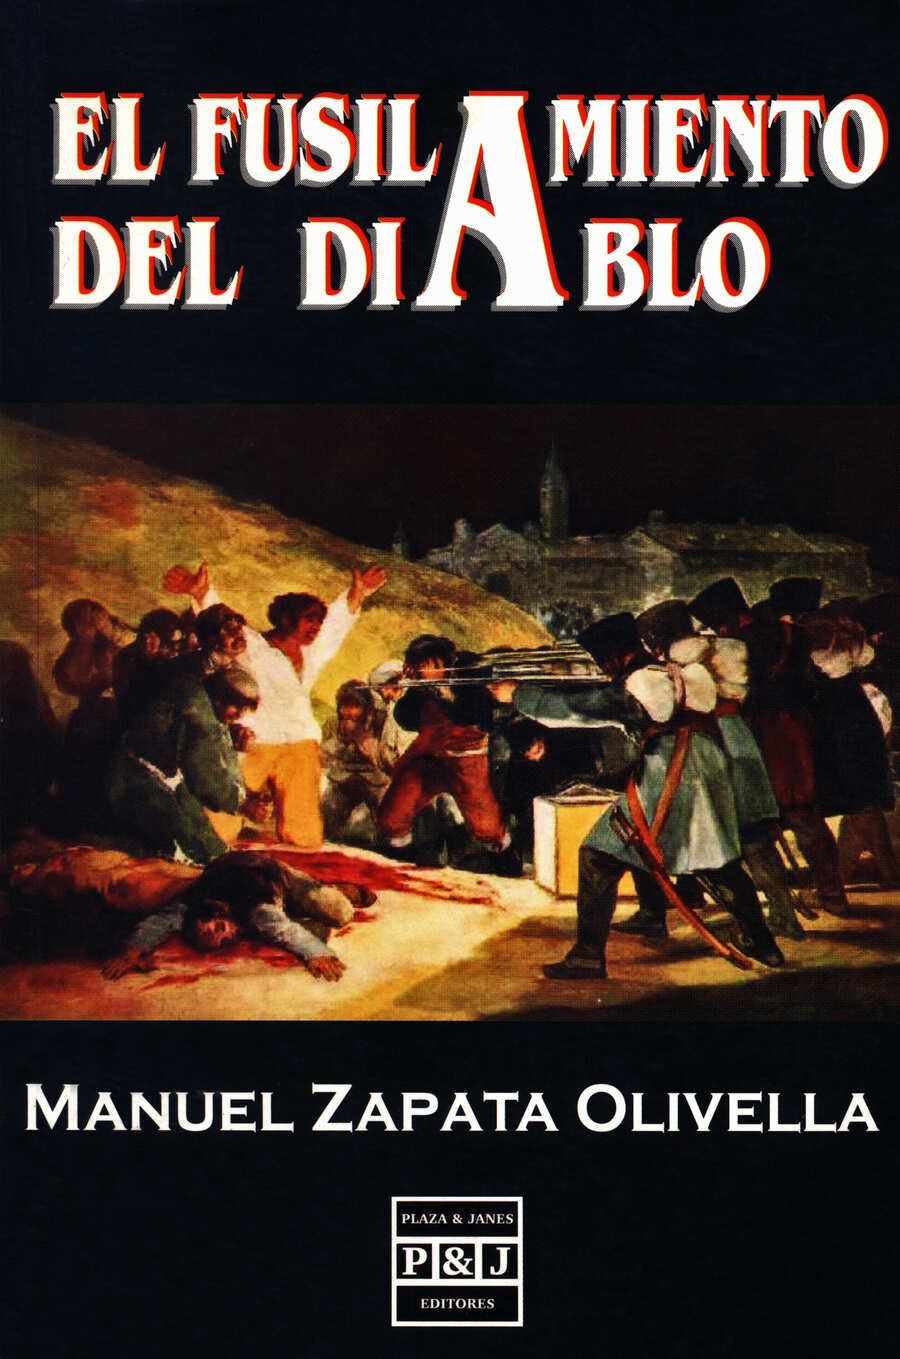 Cubierta del libro El fusilamiento del diablo, primera edición realizada por Plaza y Janés. 